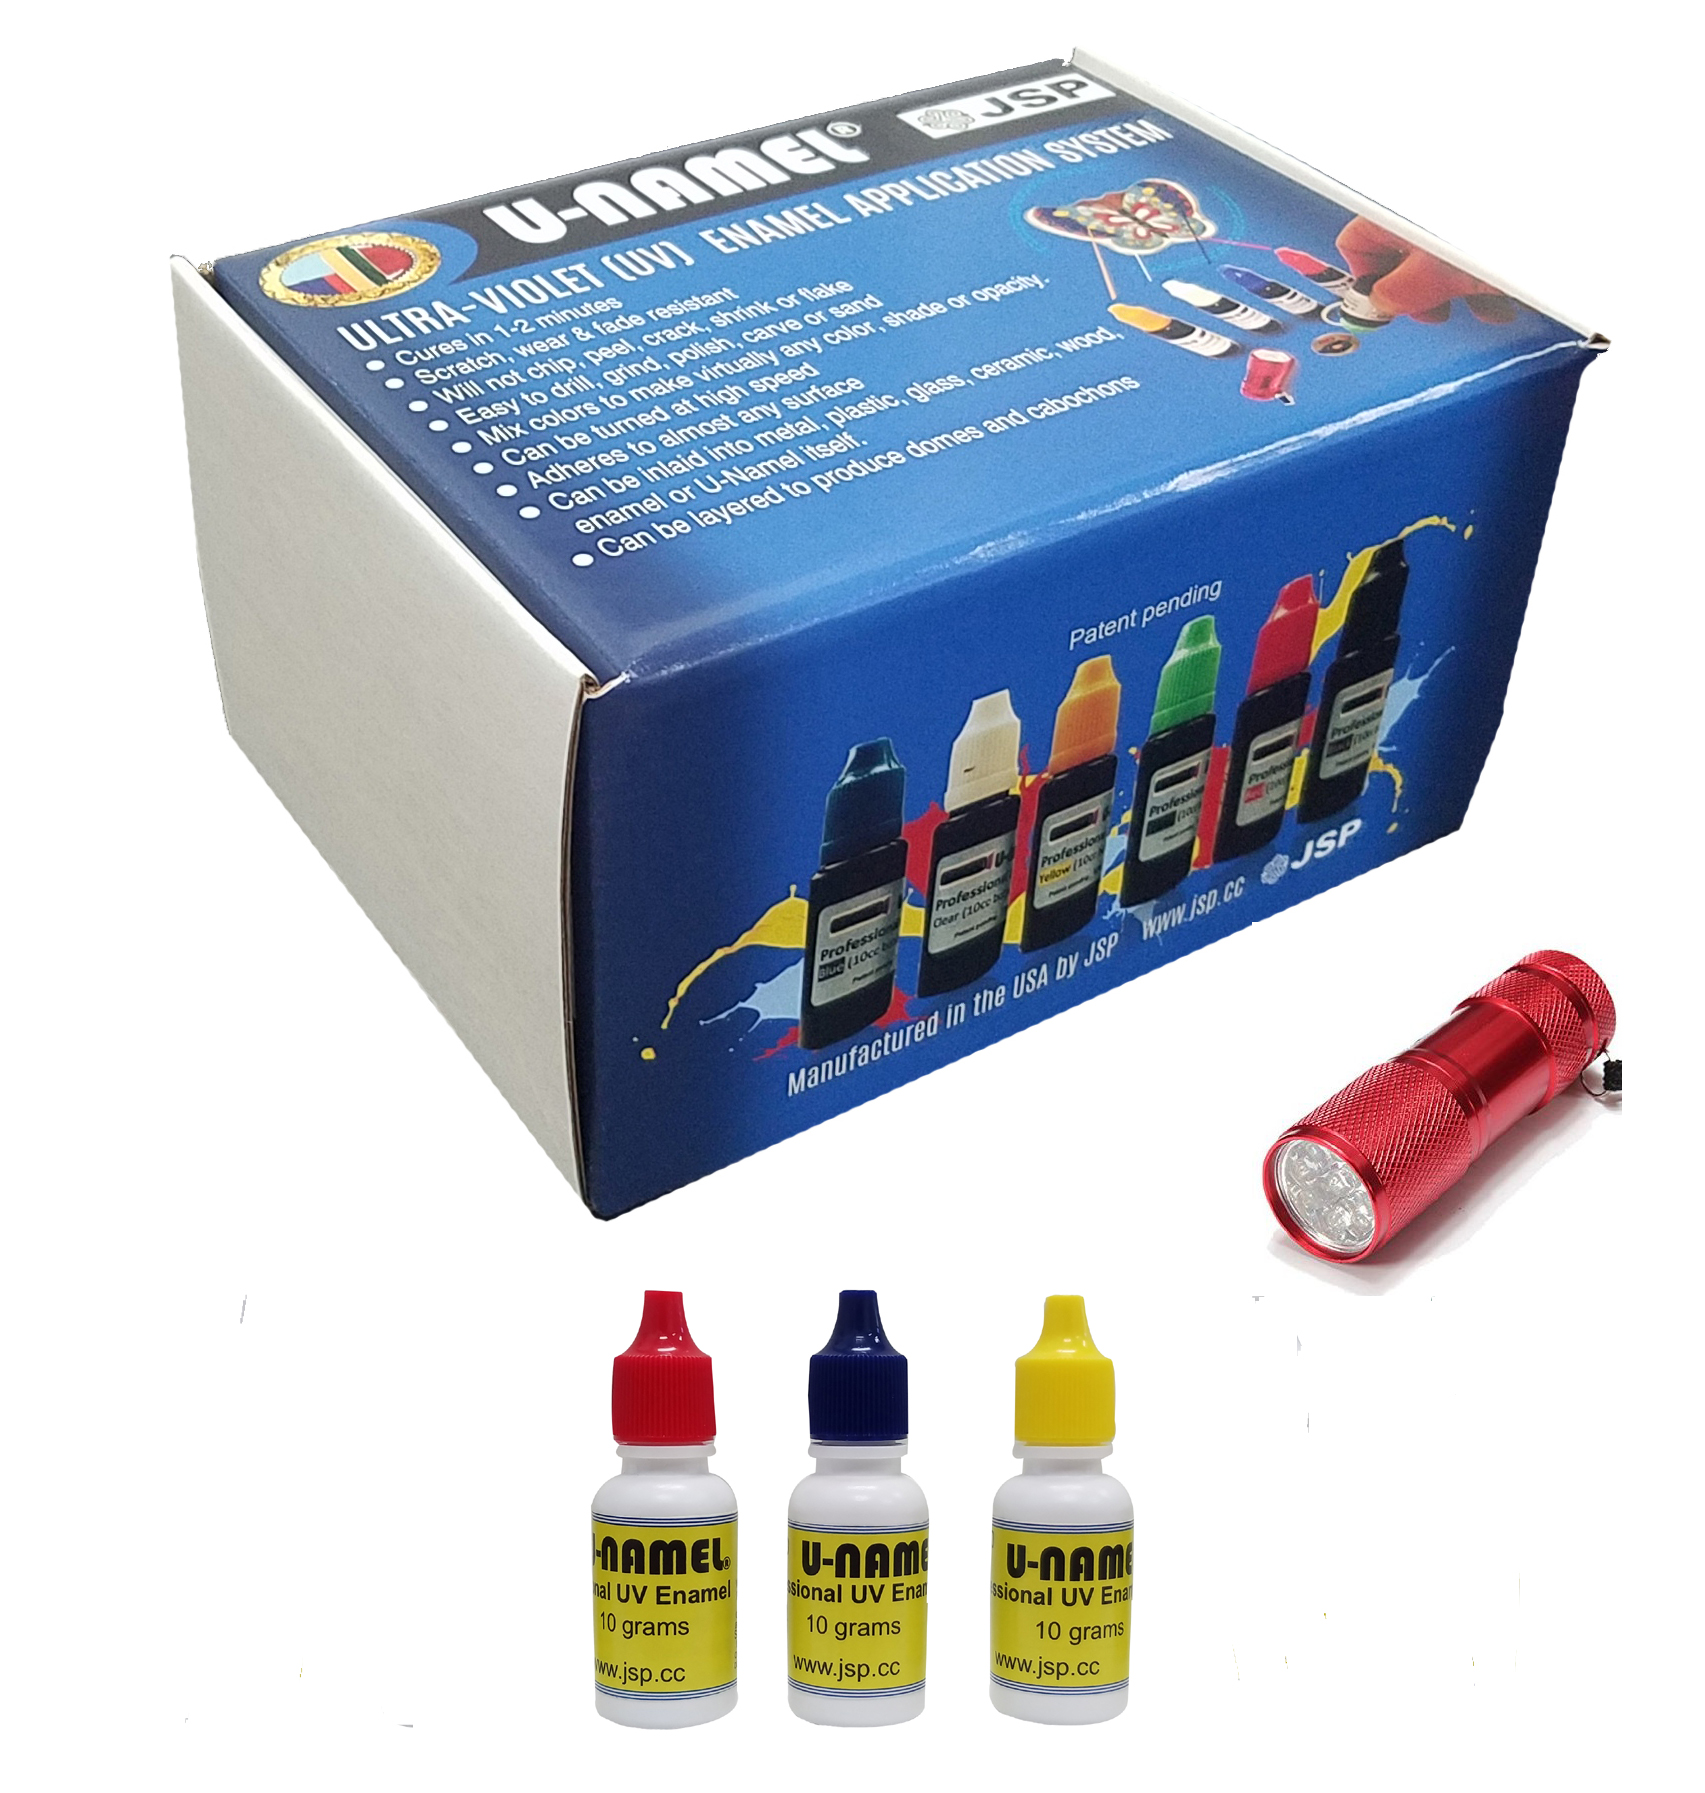 U-NAMEL® starter kit, 3 colors+ led